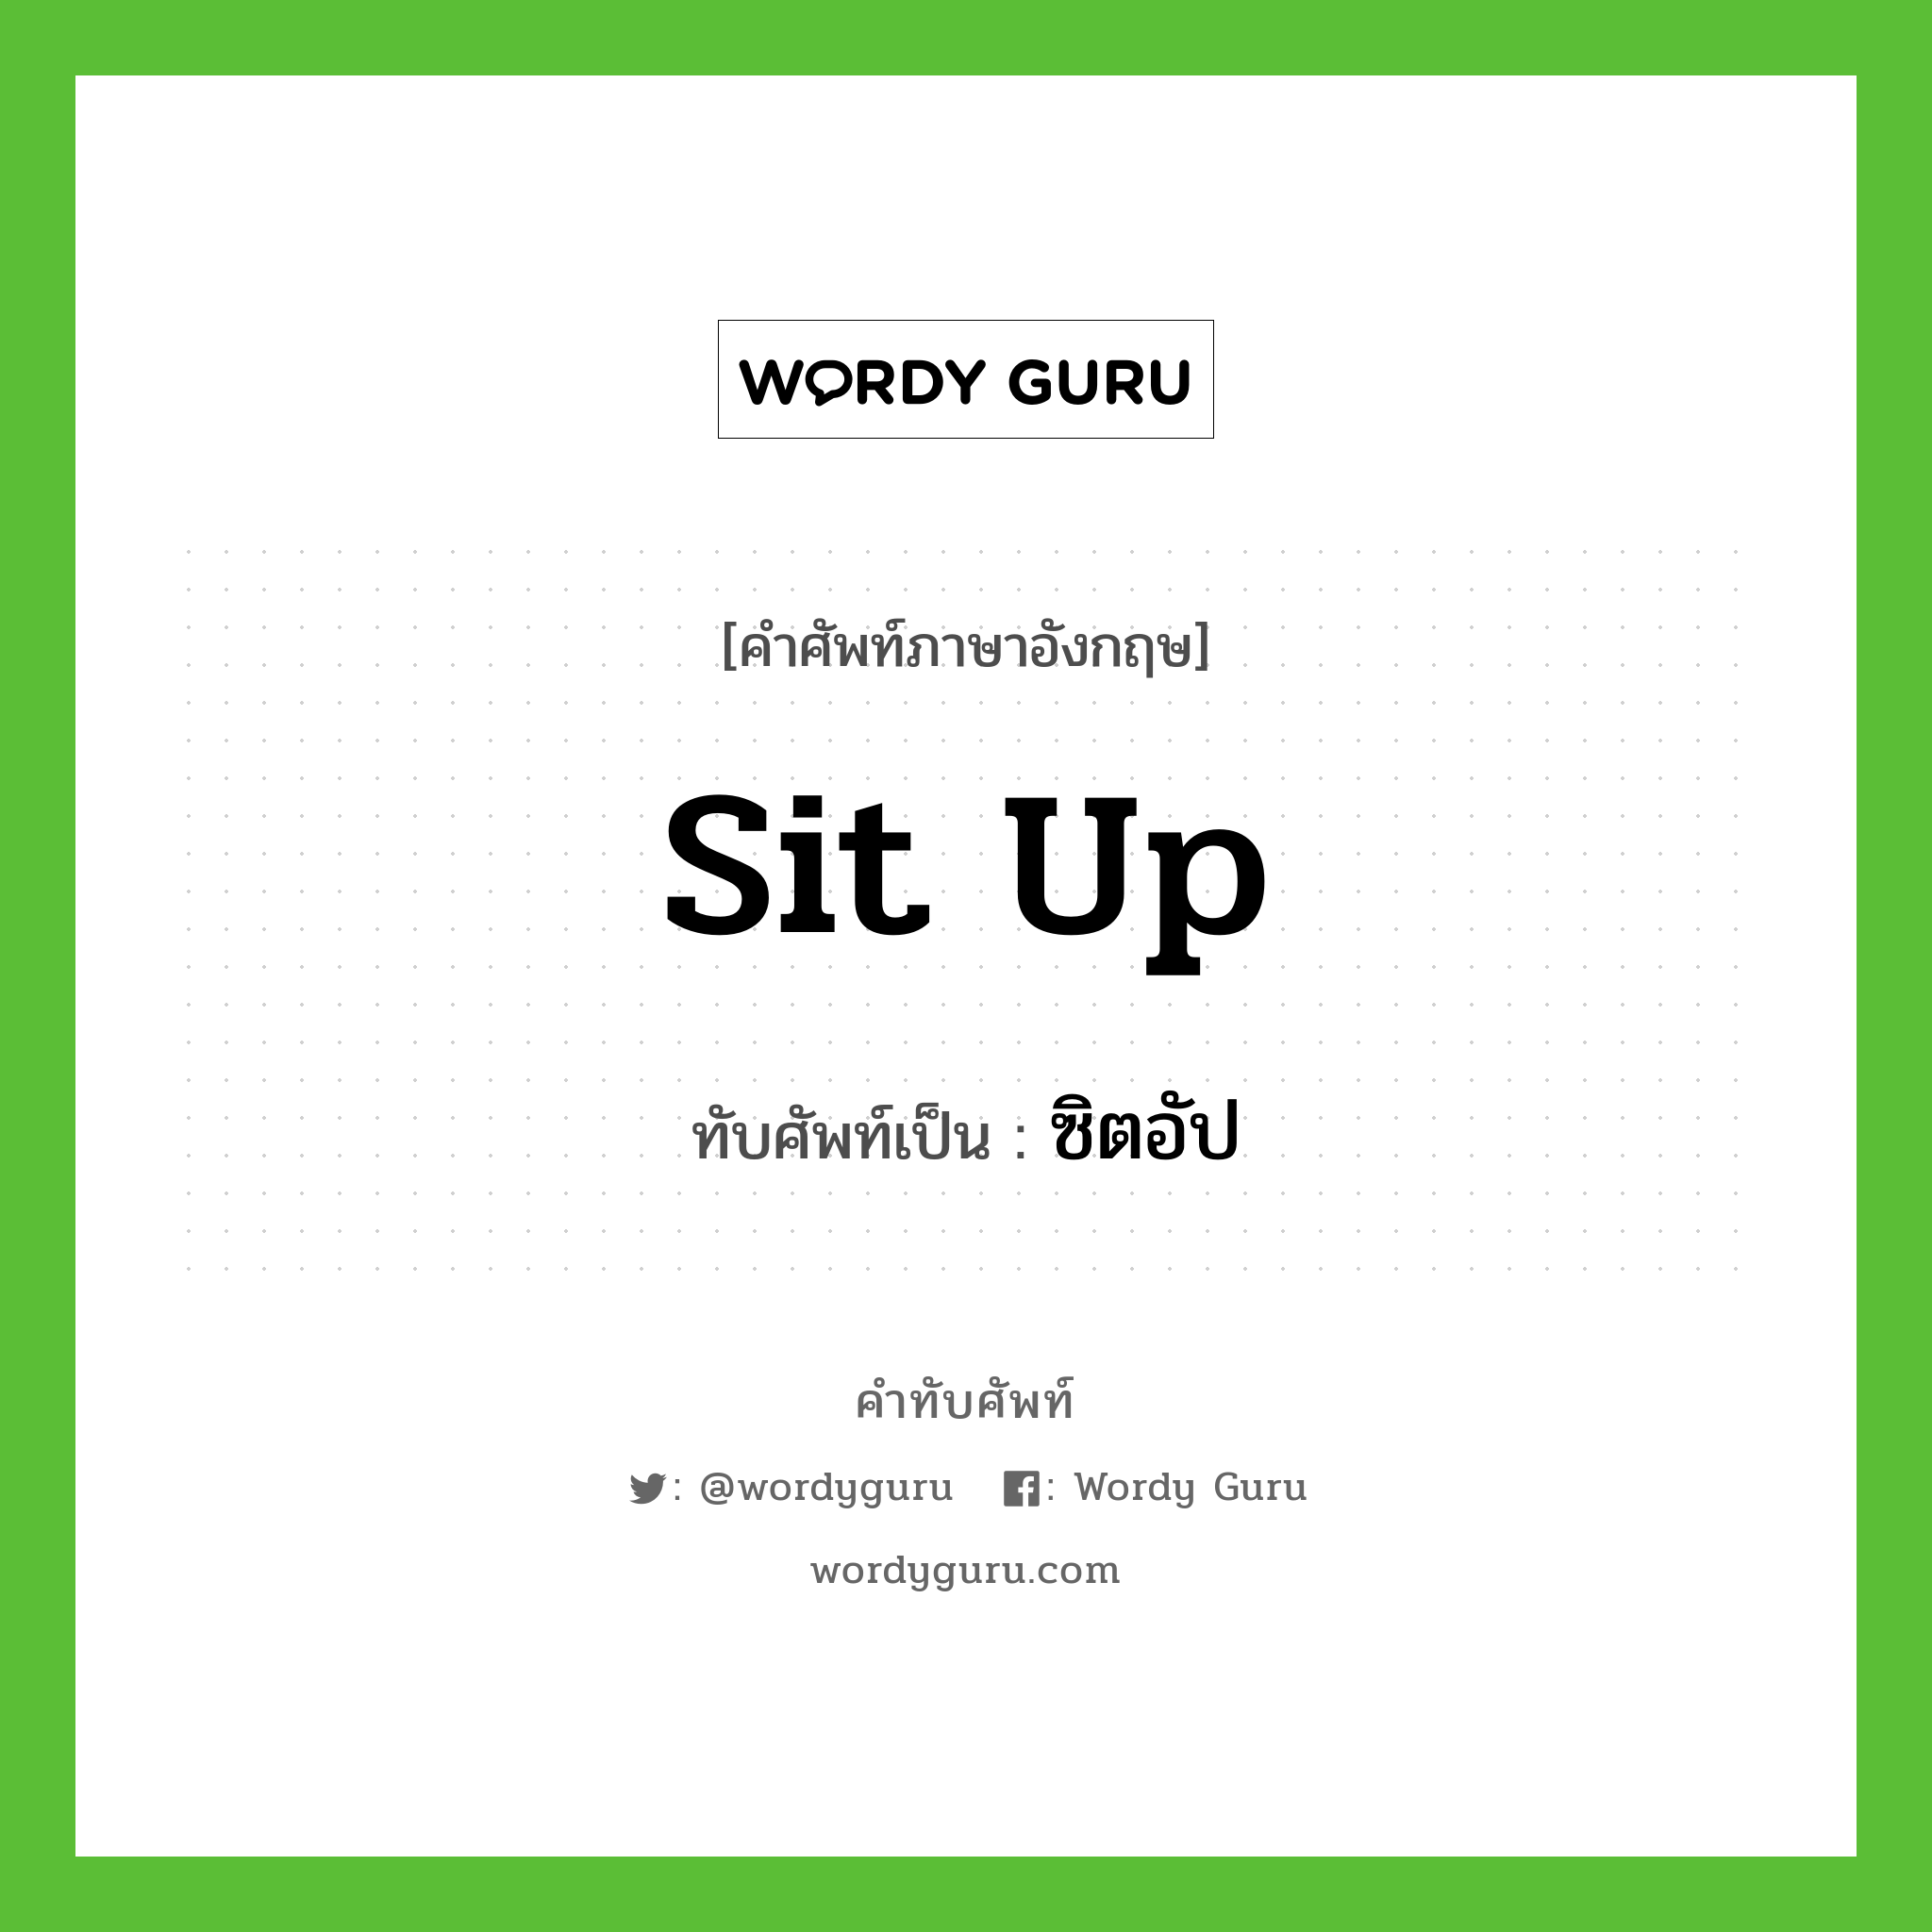 sit up เขียนเป็นคำไทยว่าอะไร?, คำศัพท์ภาษาอังกฤษ sit up ทับศัพท์เป็น ซิตอัป